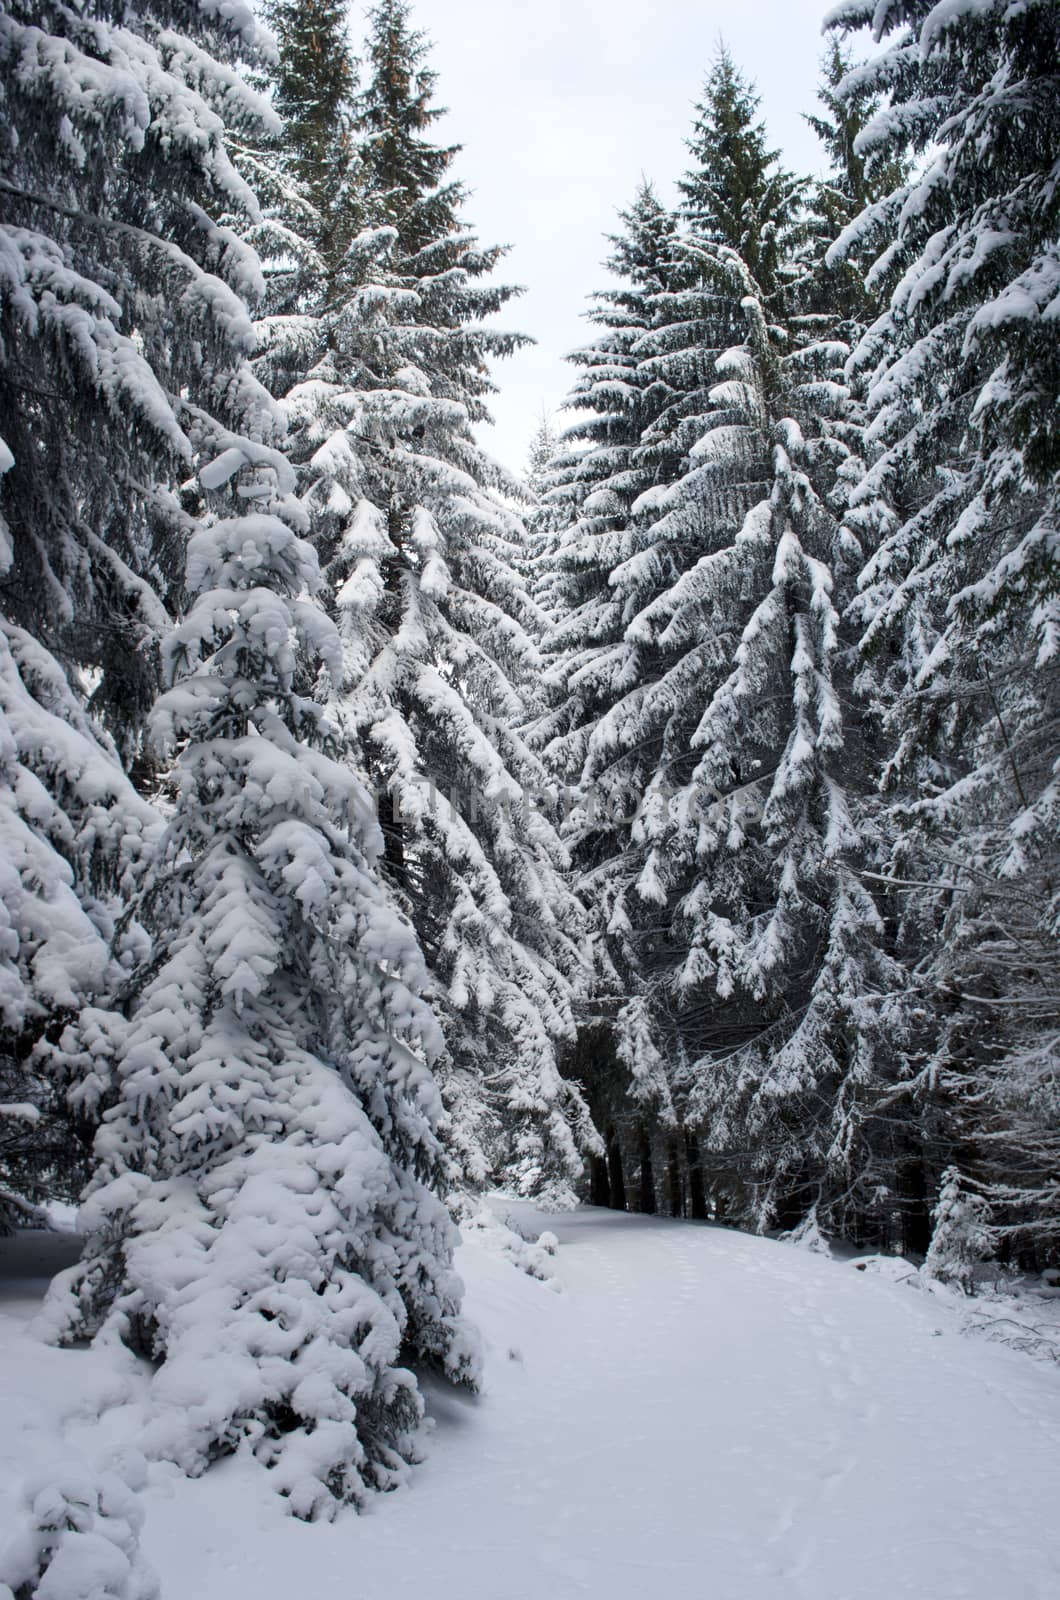 Frozen winter forest. Carpathian, Ukraine by dolnikow